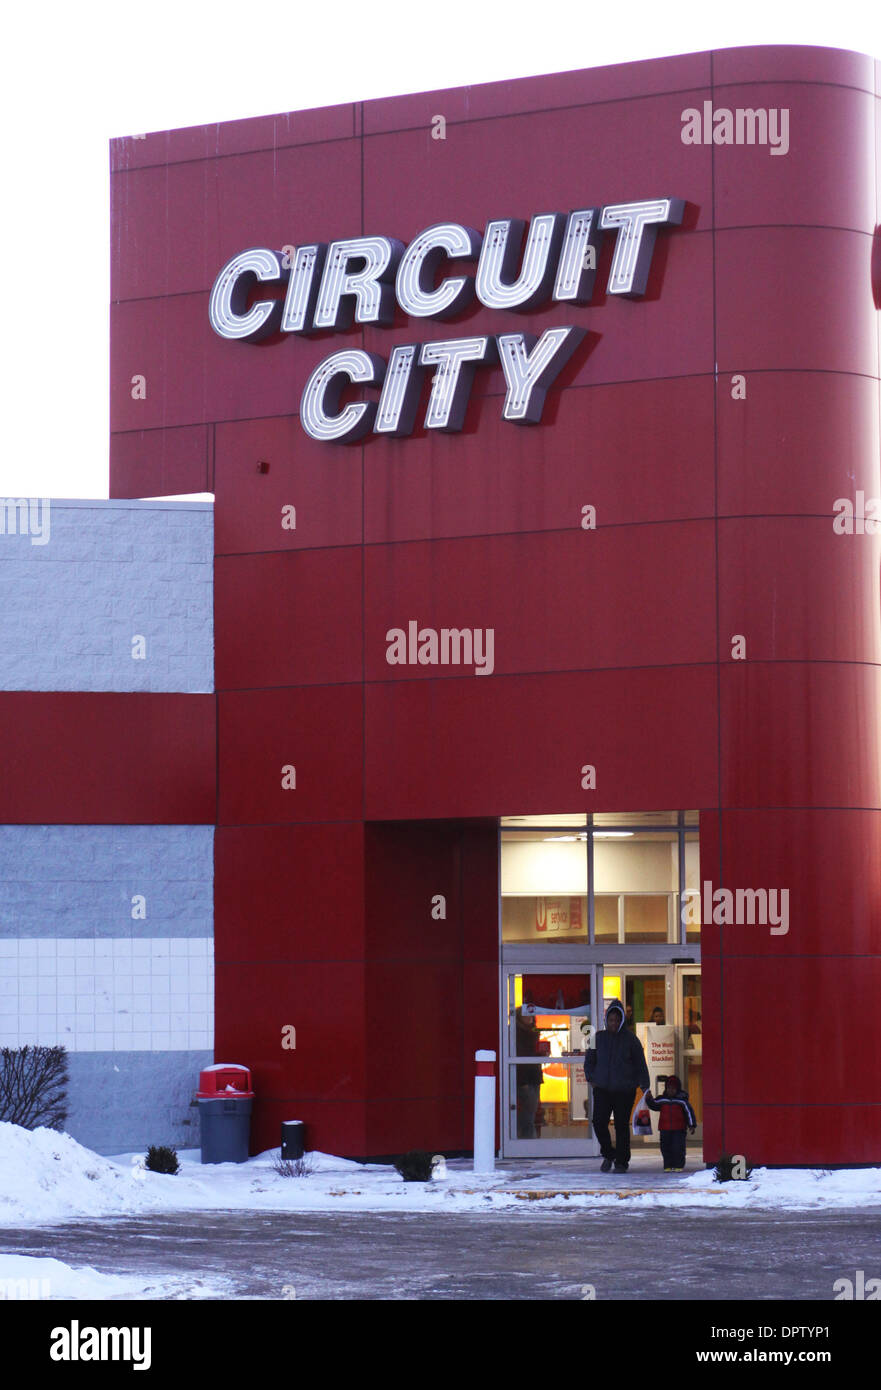 16. Januar 2009 - North Haven, Connecticut, USA - Circuit City zu liquidieren, shutter Läden. Konkurs Elektronikhändler Circuit City Stores sagte am Freitag wird es seine Vermögenswerte zu liquidieren und Hunderte von US-Läden geschlossen, nach dem gescheiterten Versuch einen Deal zu verkaufen das Unternehmen erreichen. Circuit City gehört zu den größten Retail-Insolvenzen in der aktuellen Rezession in den USA. Seinen Untergang ebnet den Weg für l Stockfoto